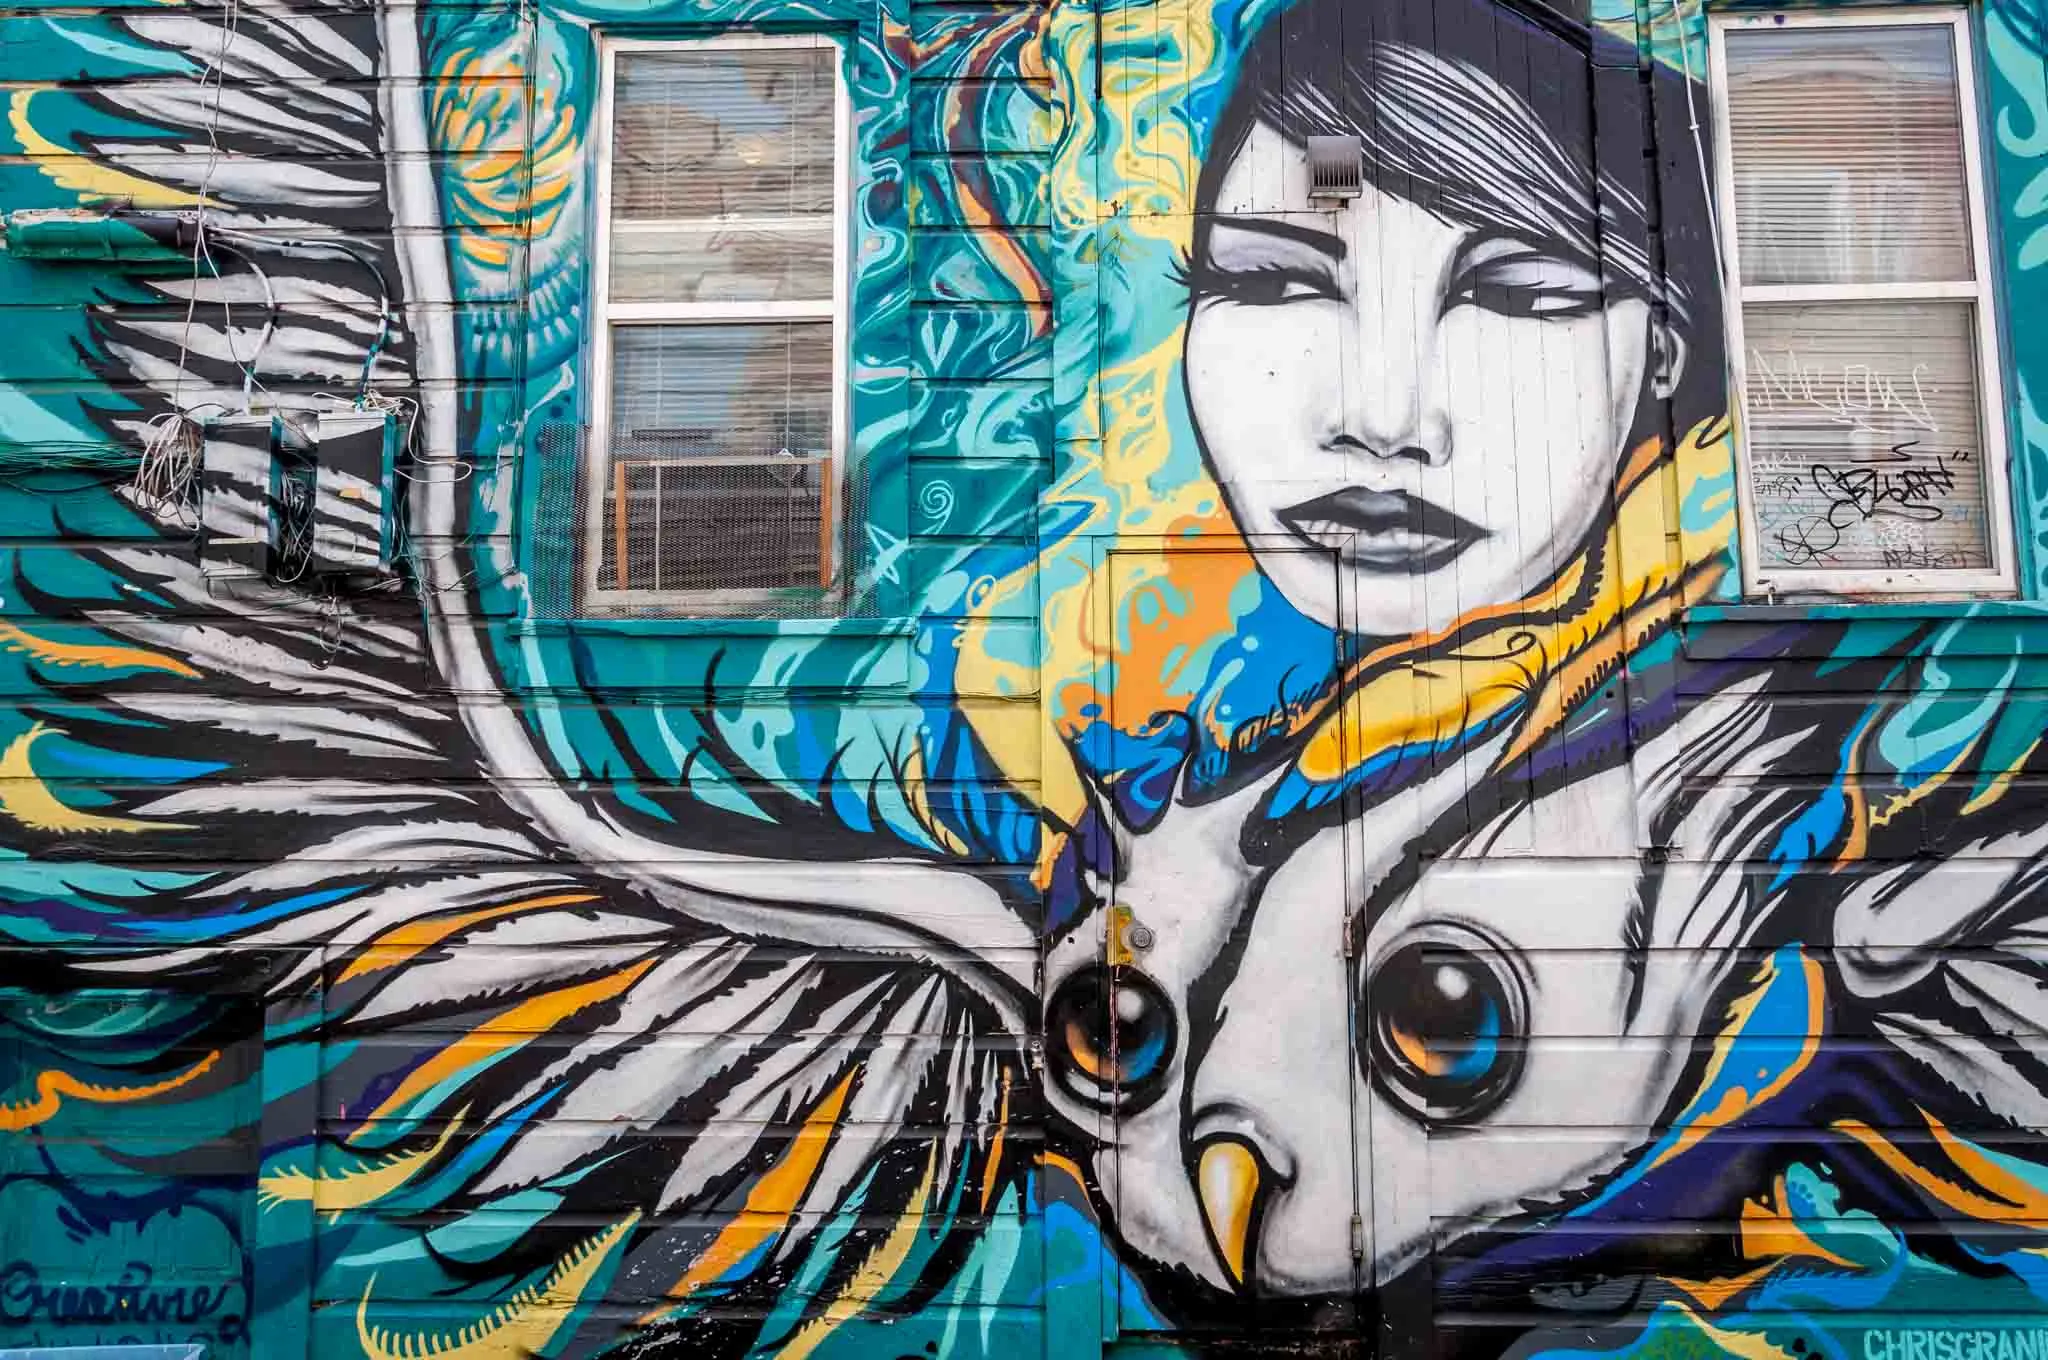 Street art mural of a woman and bird 